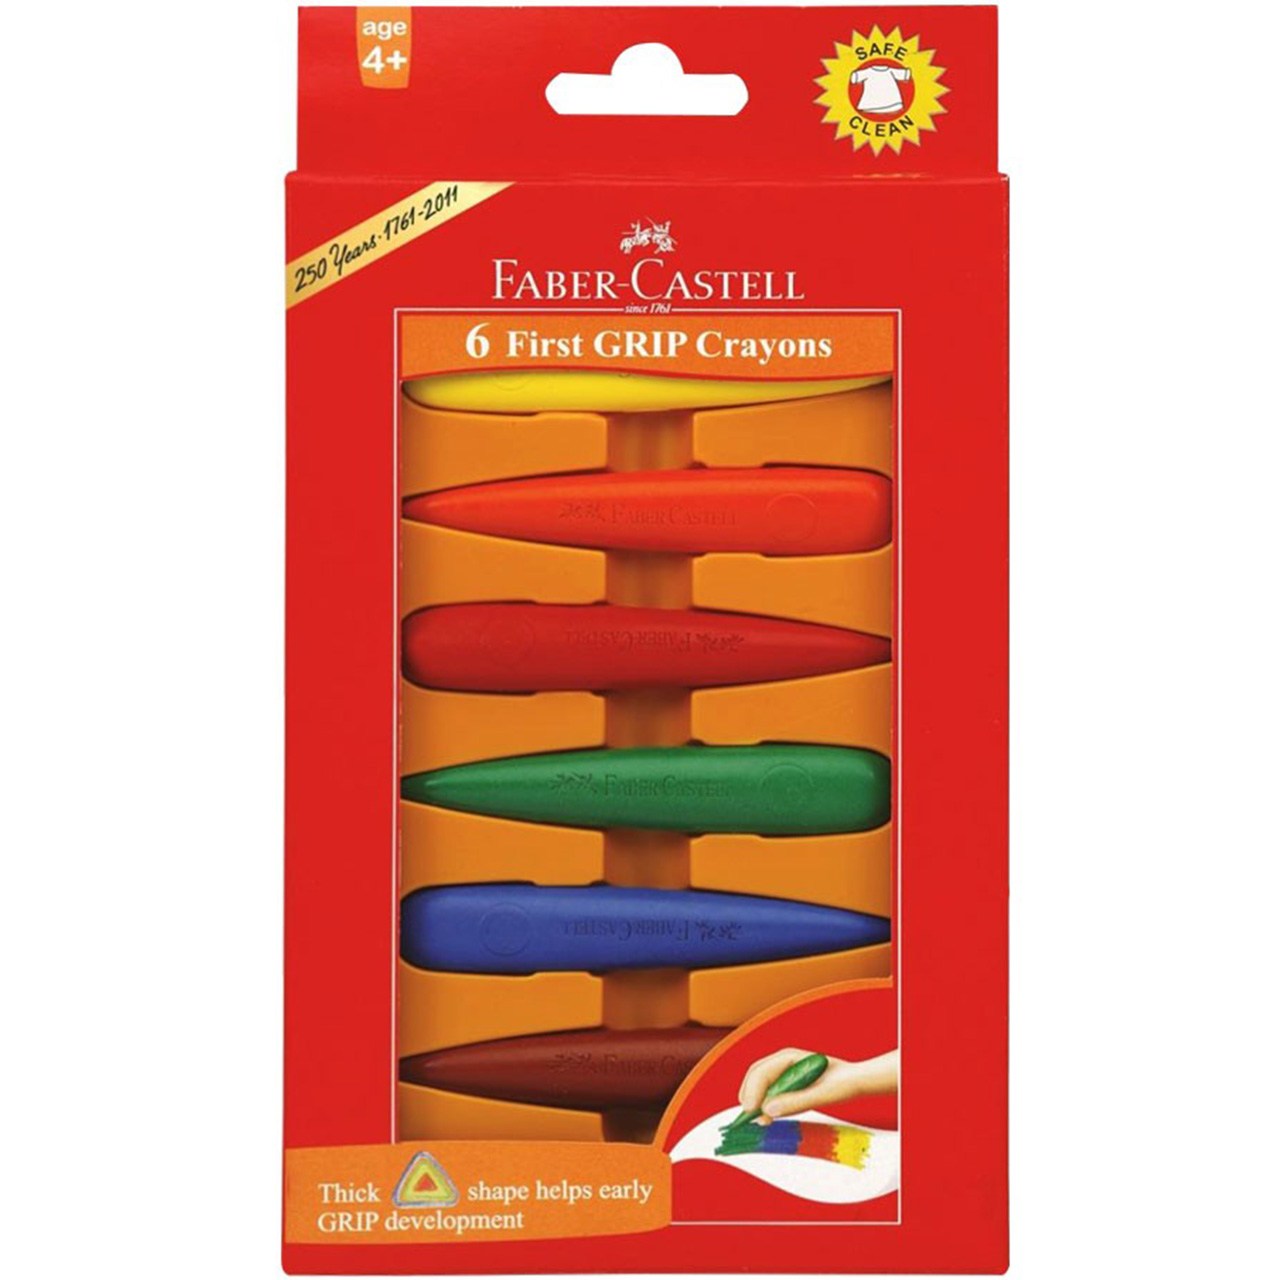 مداد شمعی فابر کاستل مدل فرست گریپ - بسته 6 رنگ